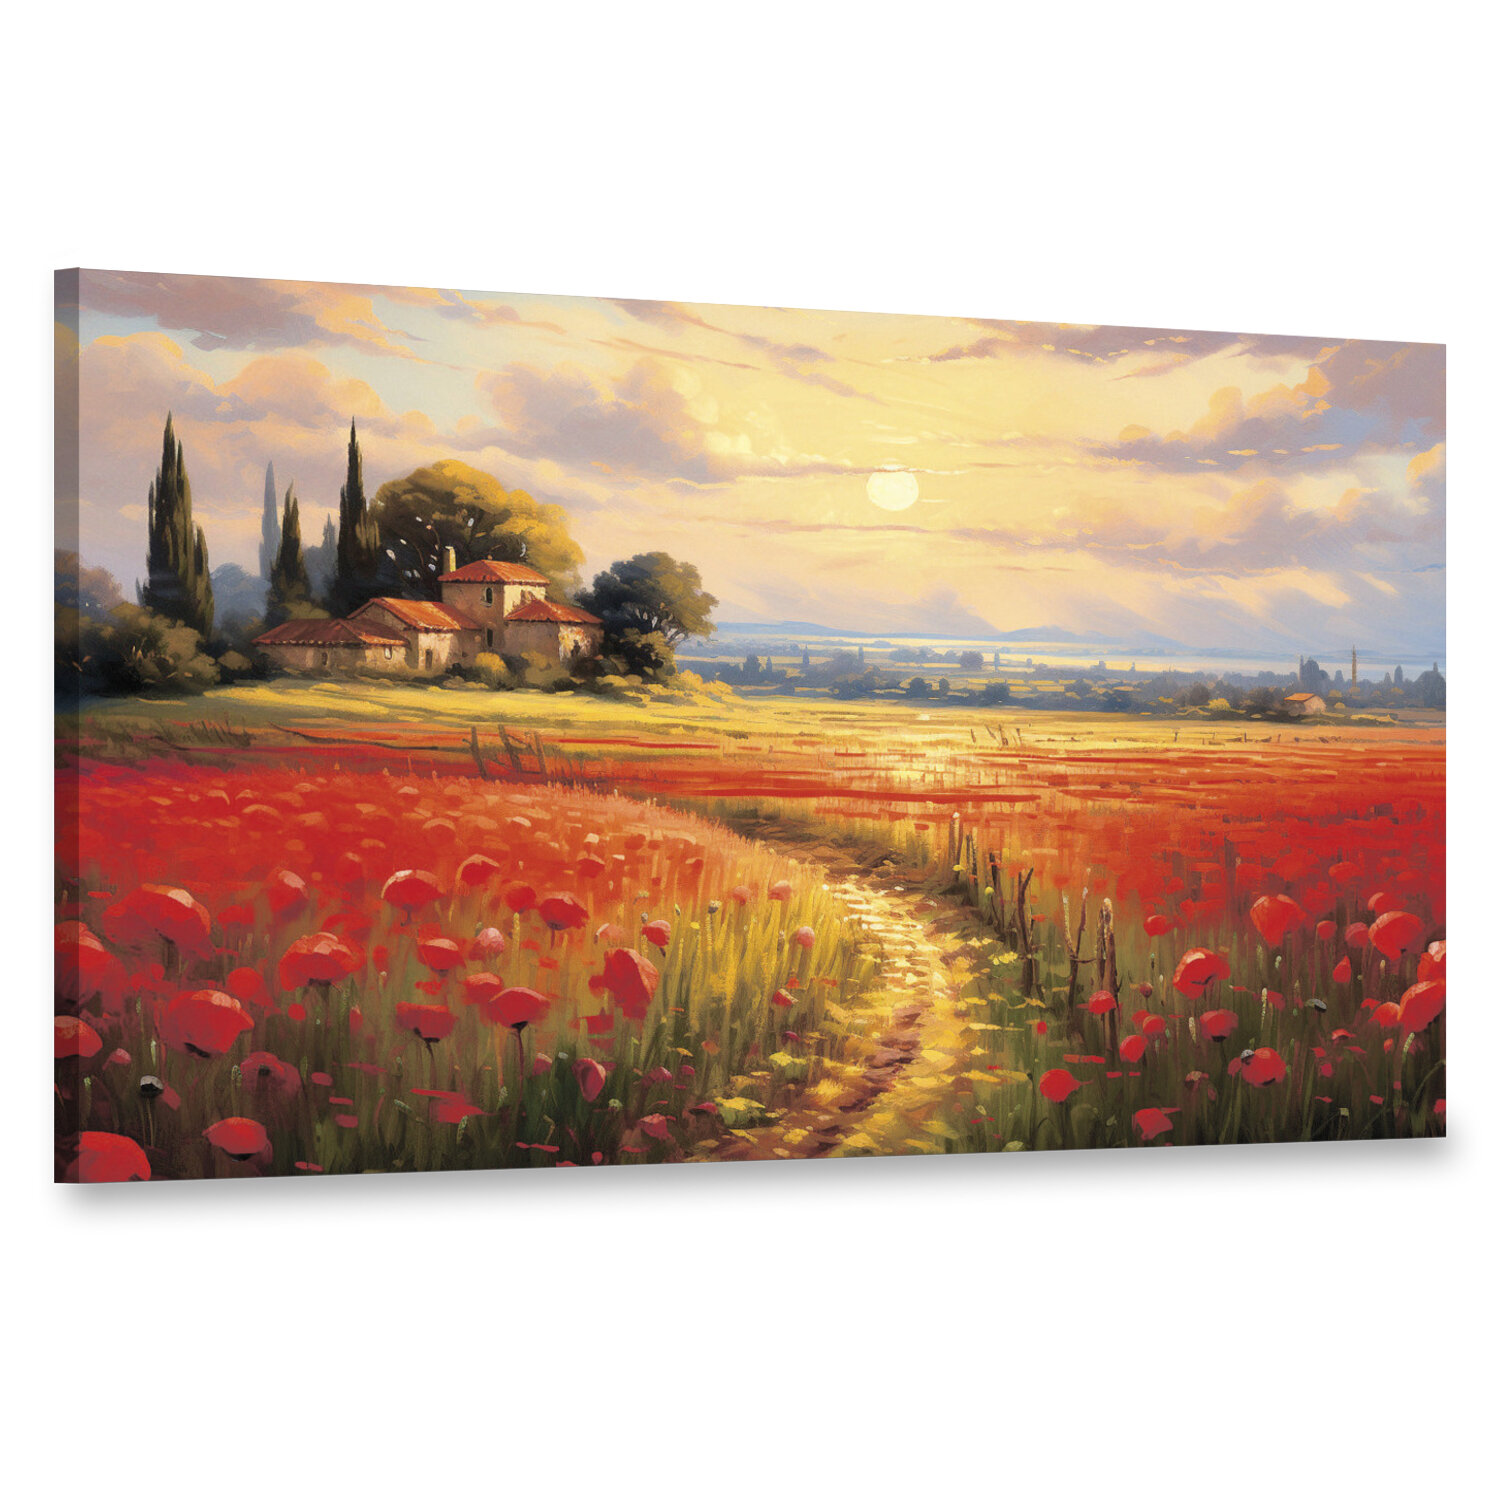 Интерьерная картина 100х60 "Пейзаж с солнцем, лугом и цветущими маками"